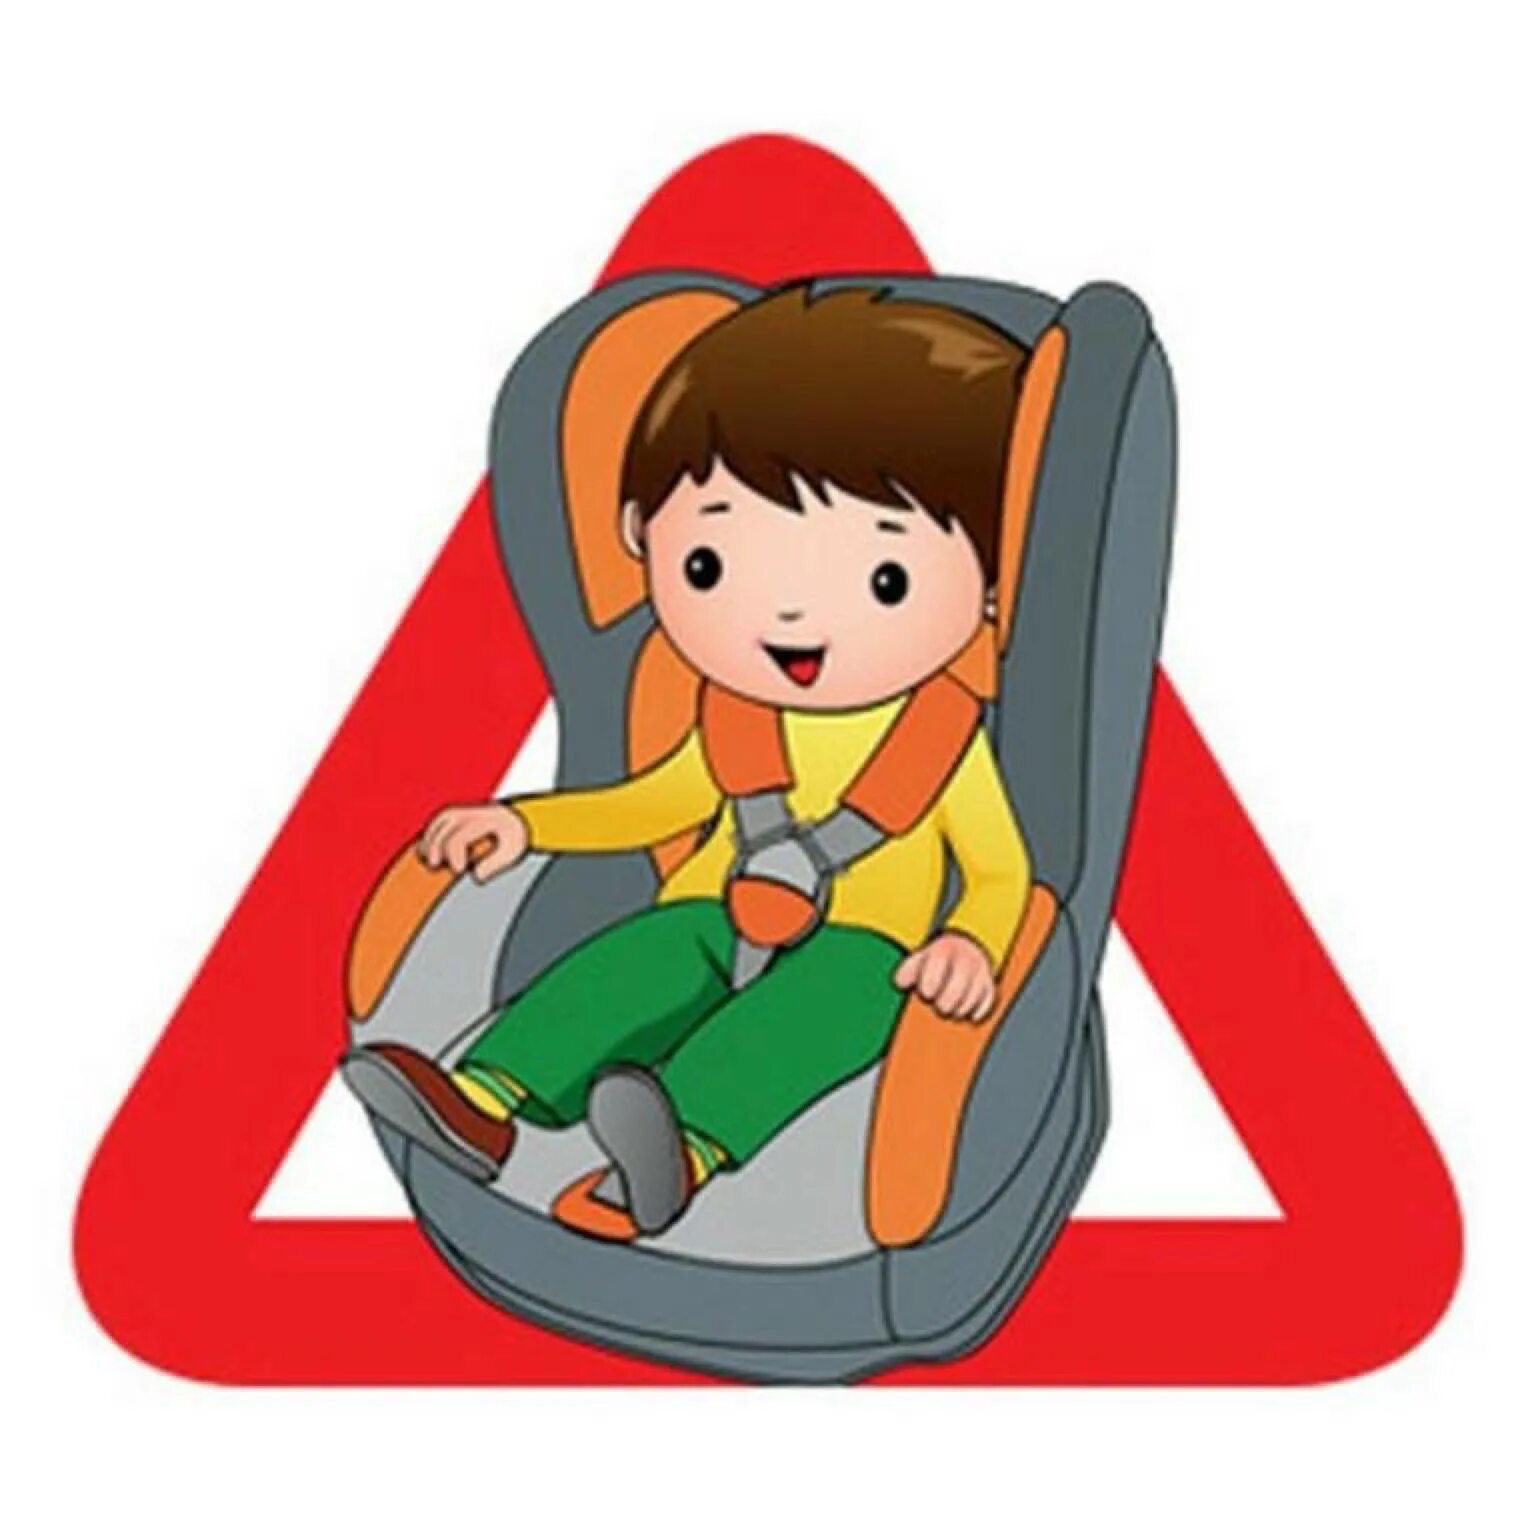 Автокресло для родителей. Автокресло для детей. Ребенок в автокресле. Безопасность детей в автомобиле. Кресло безопасности для детей.